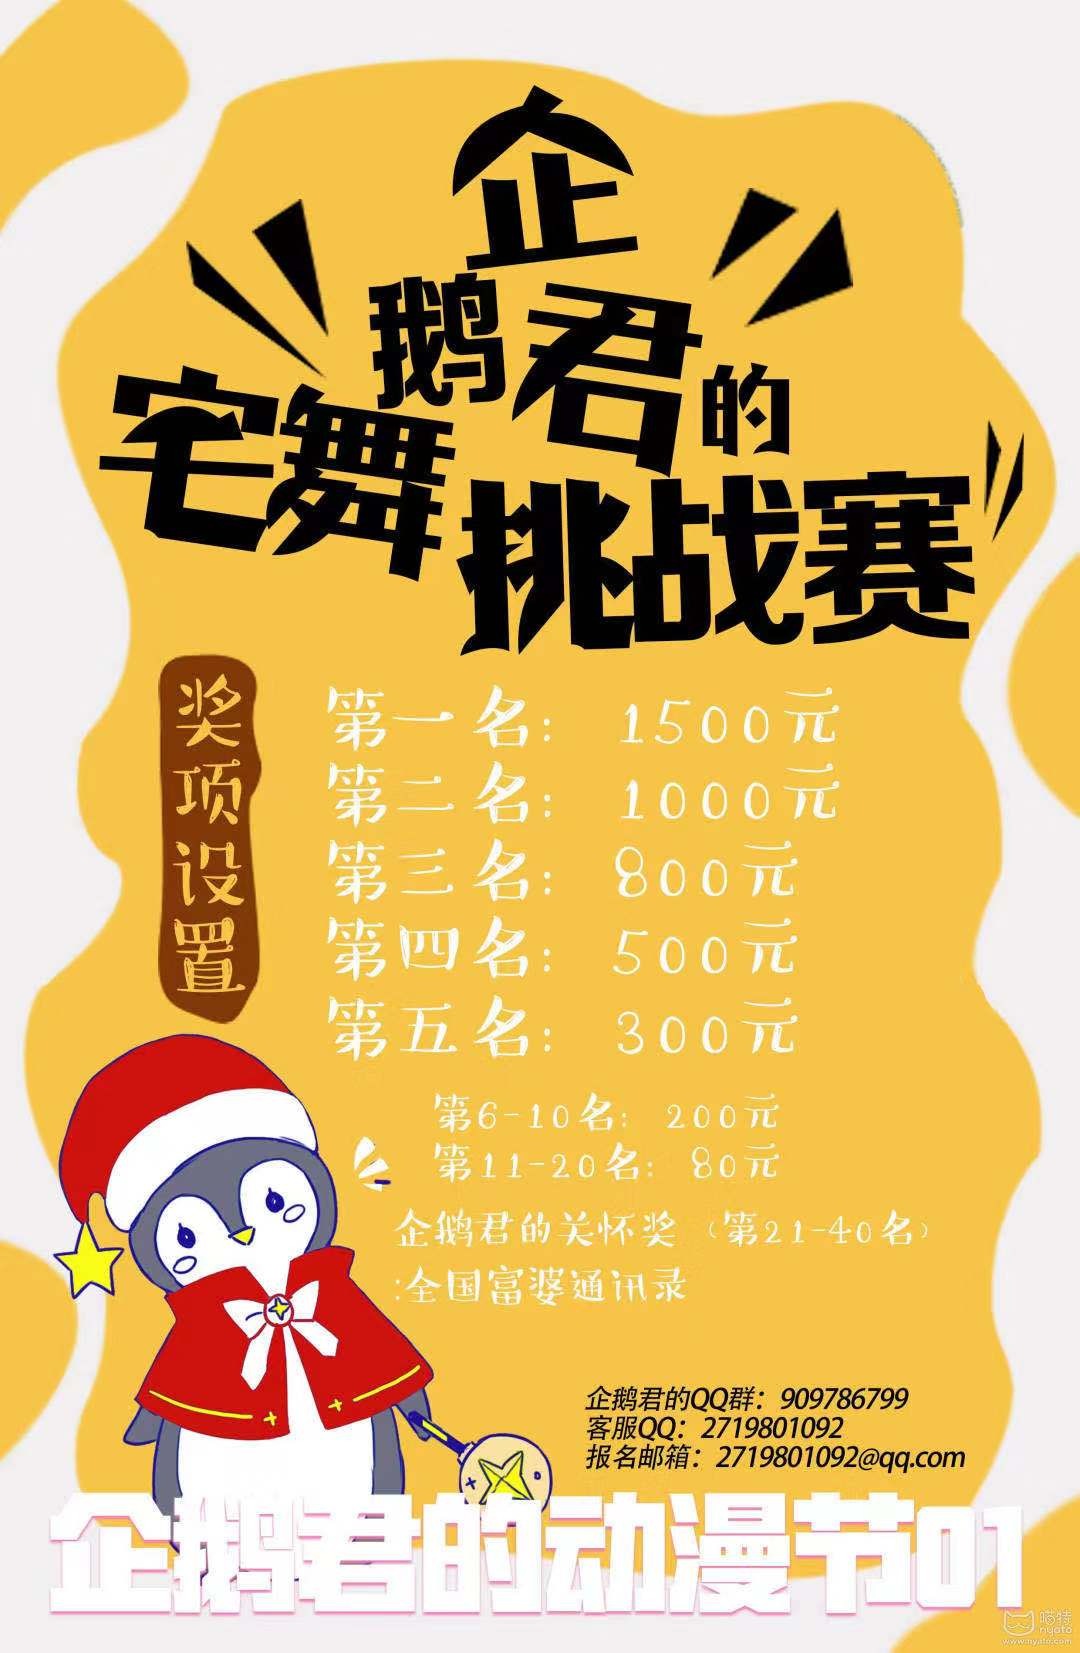 12月21日|企鹅君的动漫节01将在中亚会展中心举行